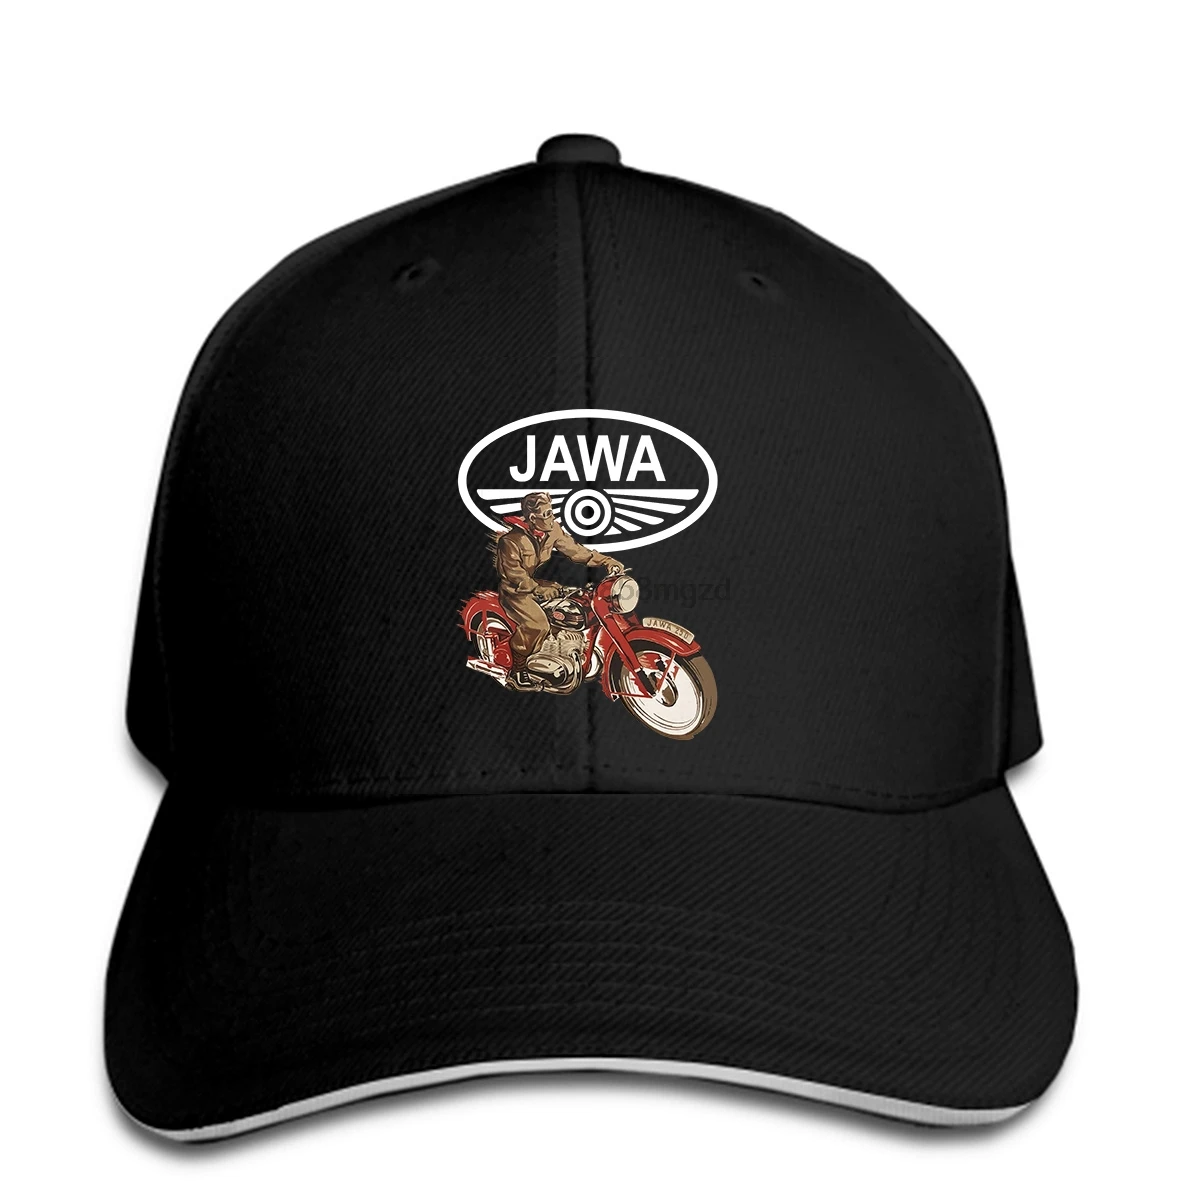 JAWA Motorrad Мужская бейсболка, Меховая кепка для фанатов von Klassischen Jawa Motorrdern, бейсболка, женская кепка, остроконечная